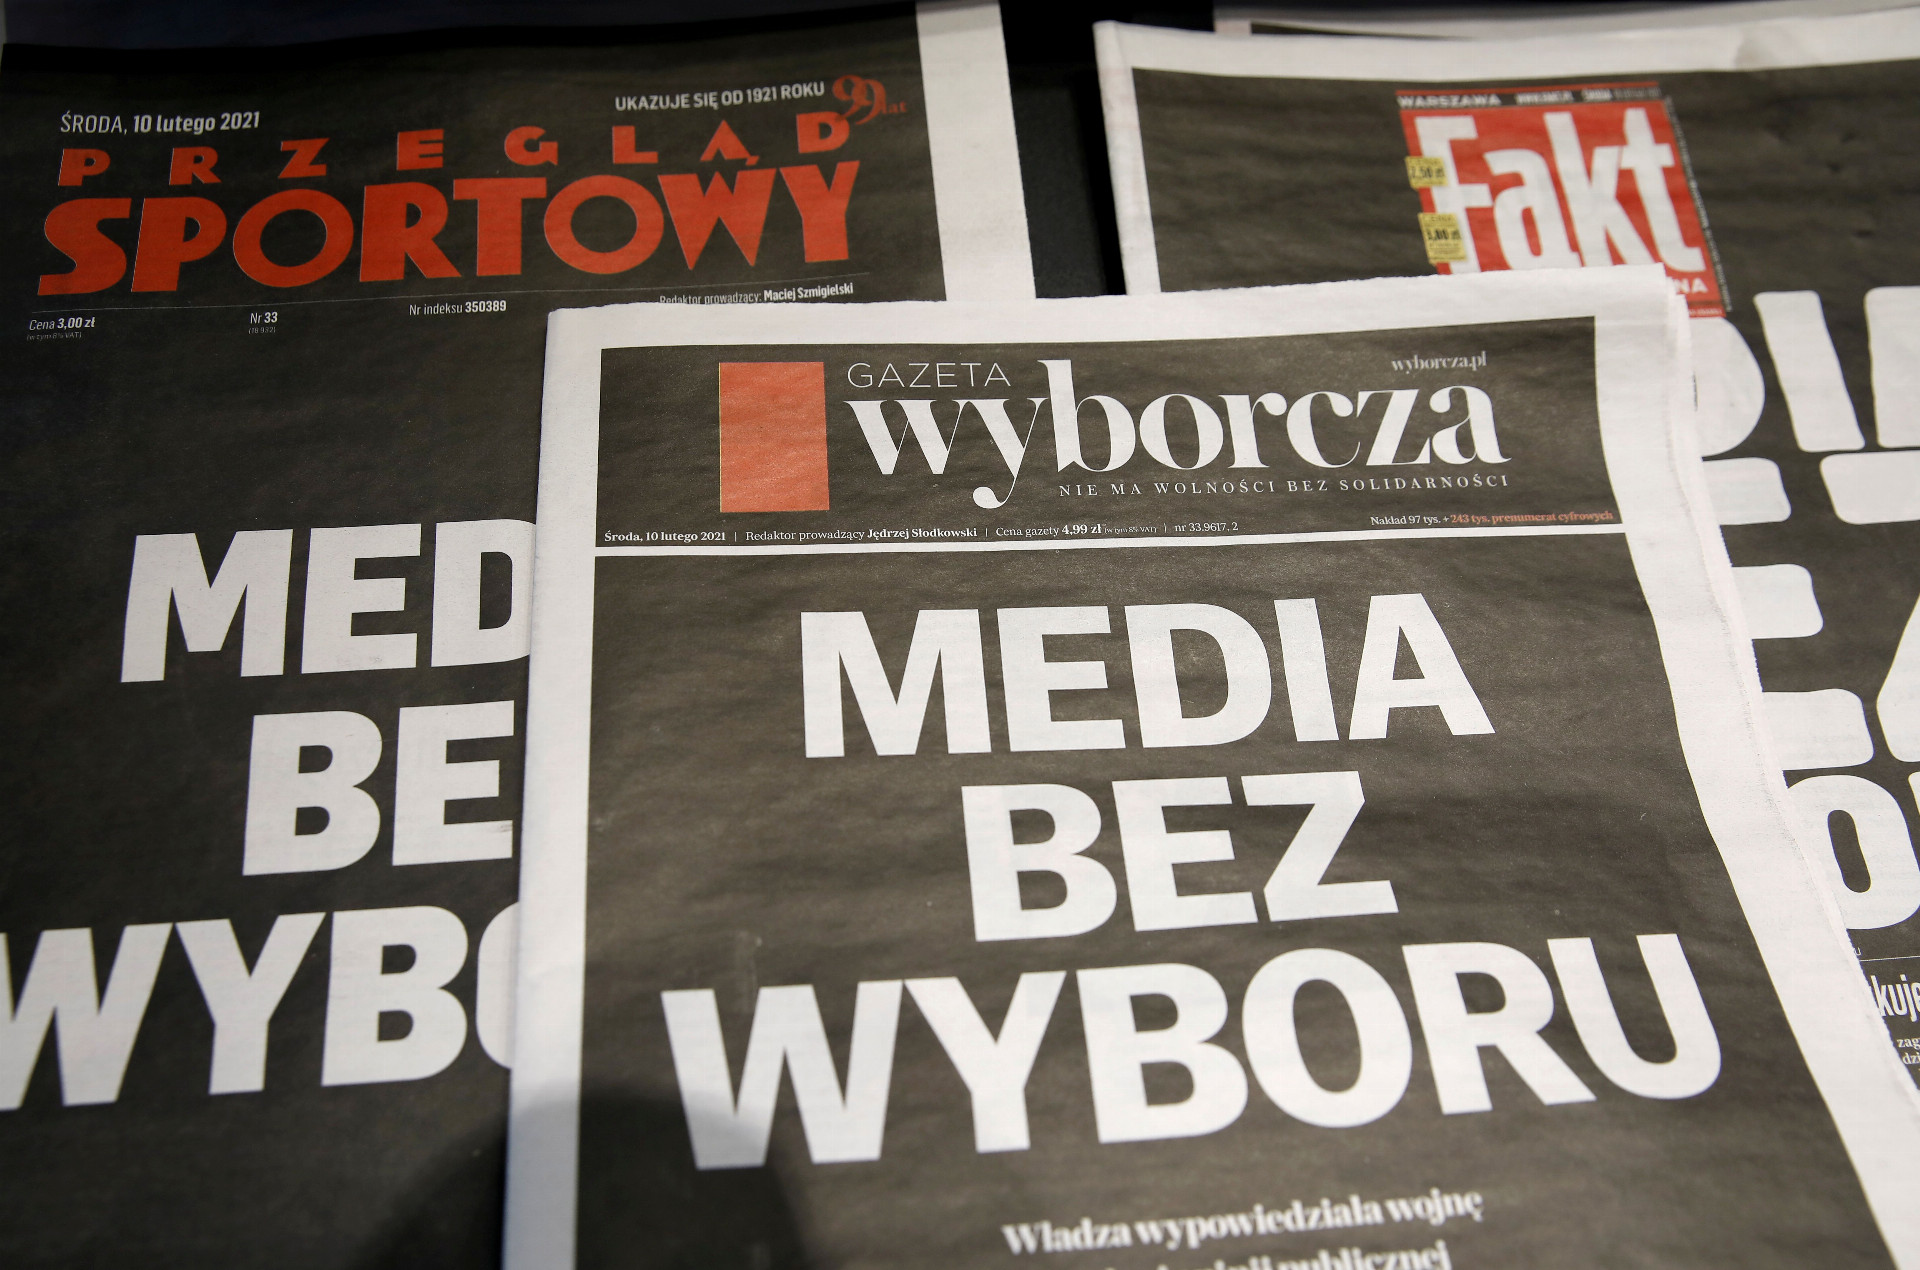 Prvé stránky hlavných poľských súkromných novín majú čierne titulné stránky so sloganom „Media without choice“ (Médiá bez voľby), ktoré sú napísané na protest proti navrhovanej dani z mediálnej reklamy, ktorá podľa predajcov ohrozuje nezávislosť tohto odvetvia 